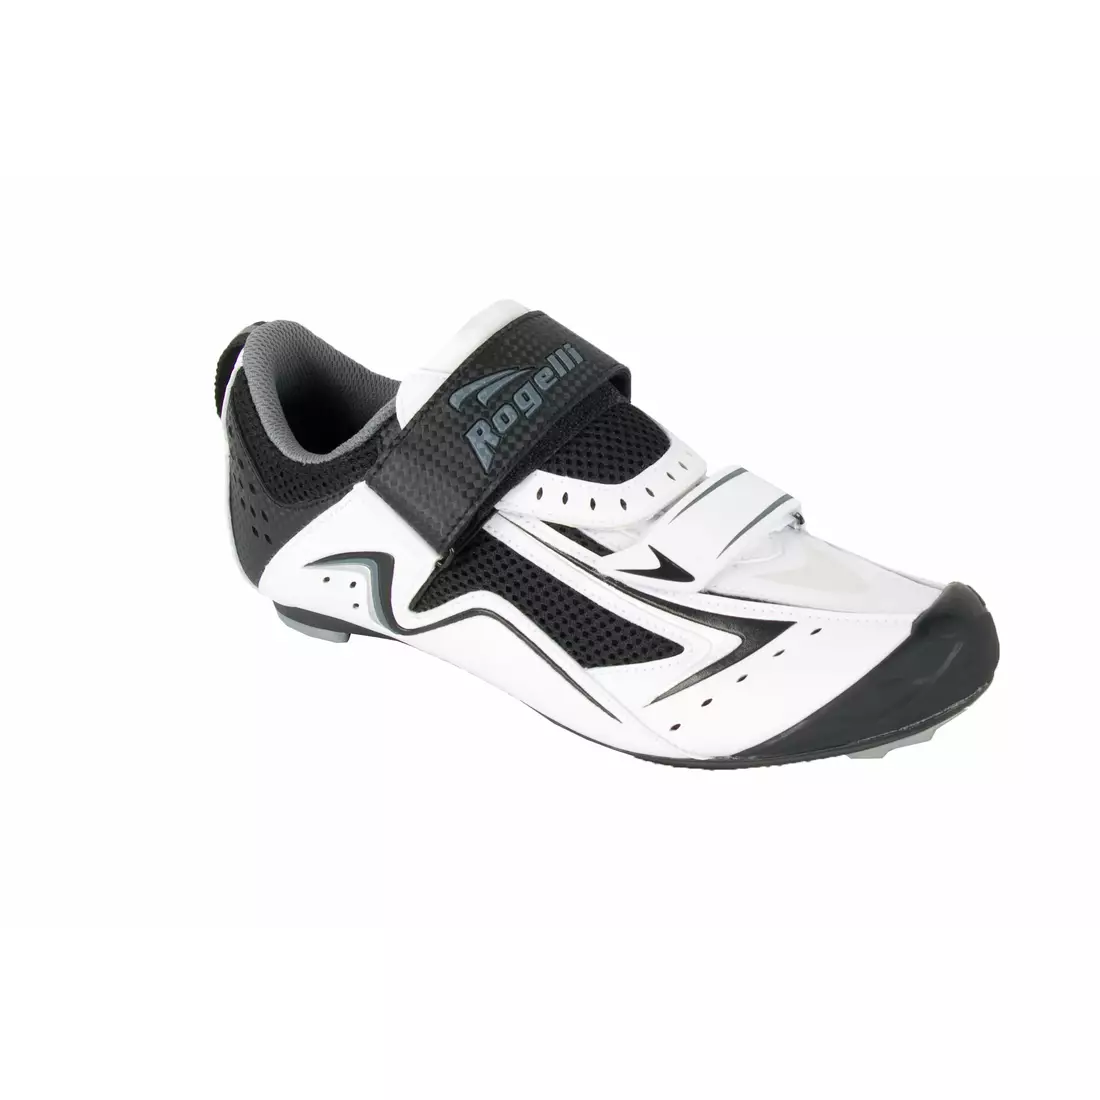 ROGELLI Triathlon/Road cycling shoes, AB-228